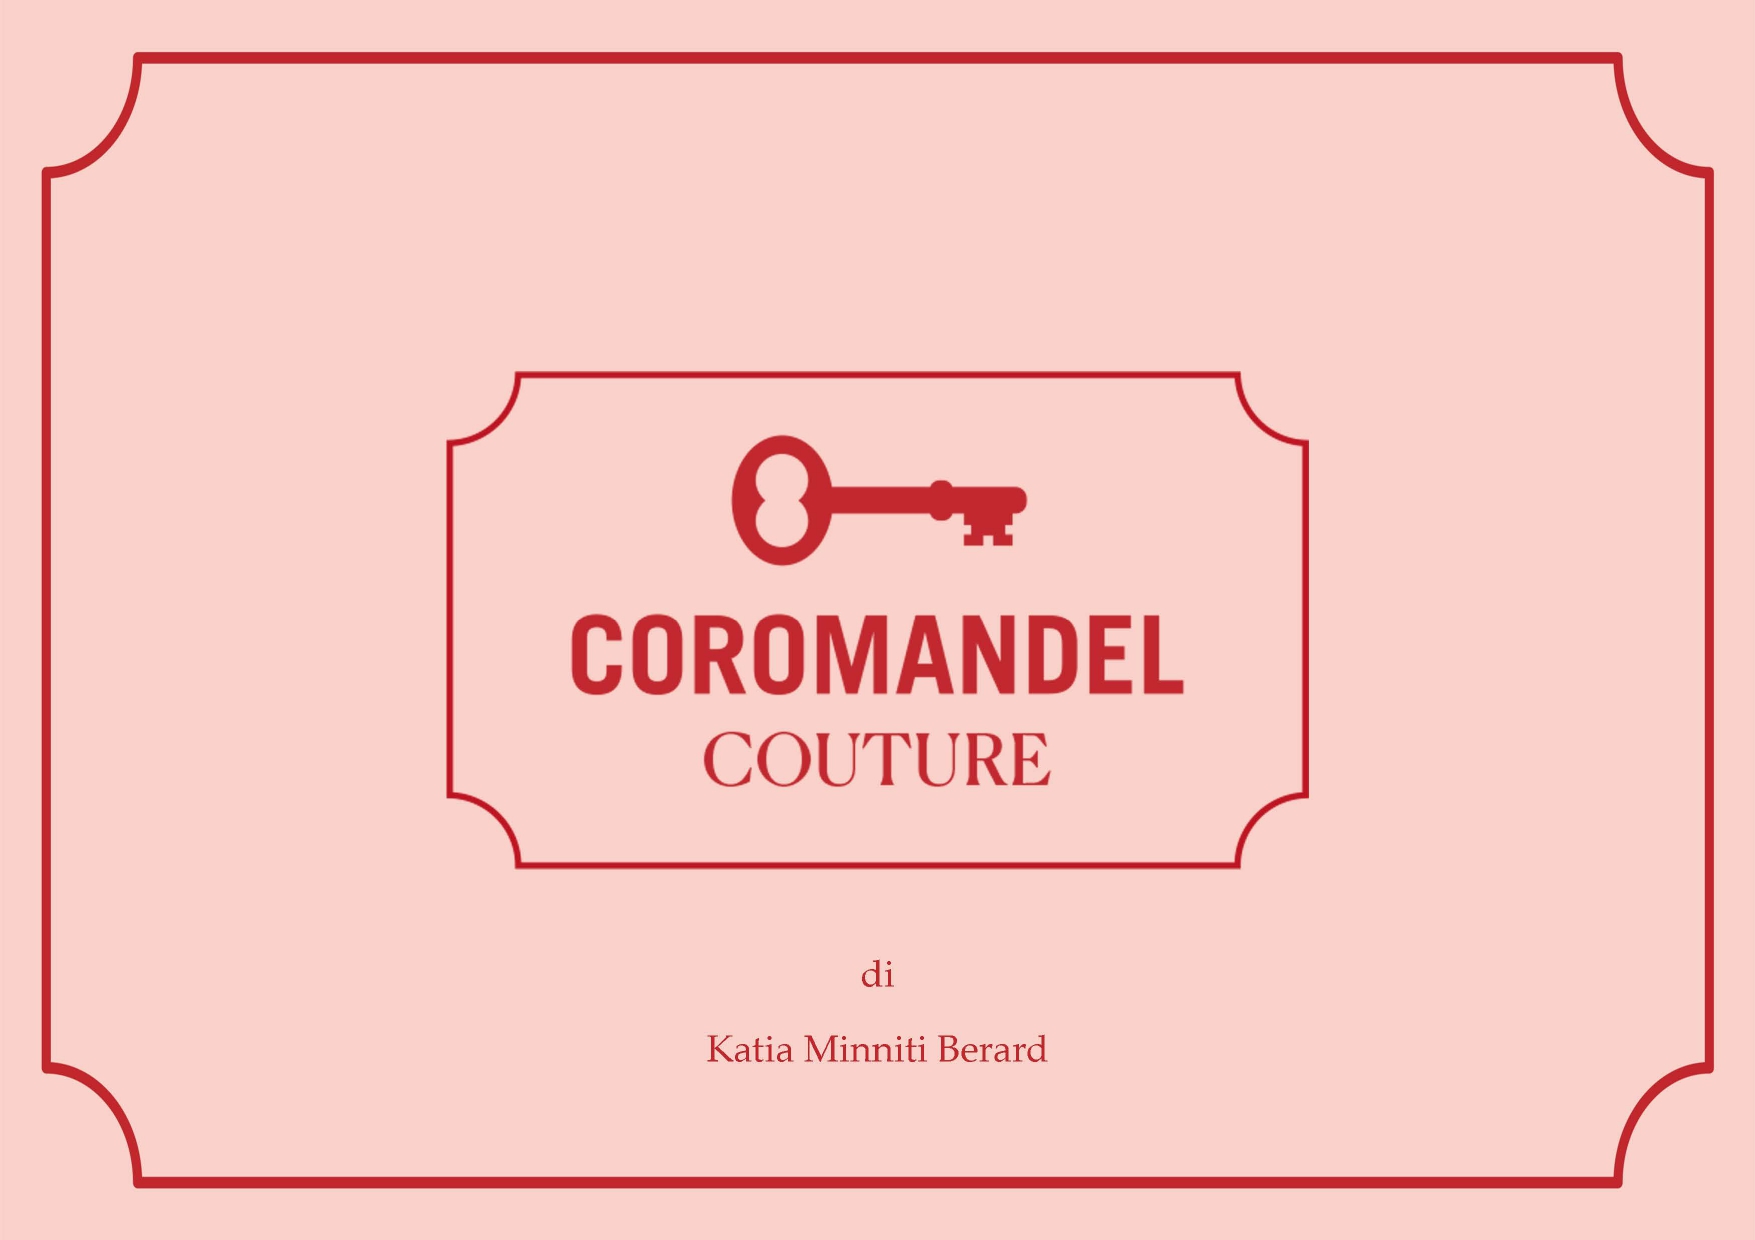 coromandel couture new_page-0001